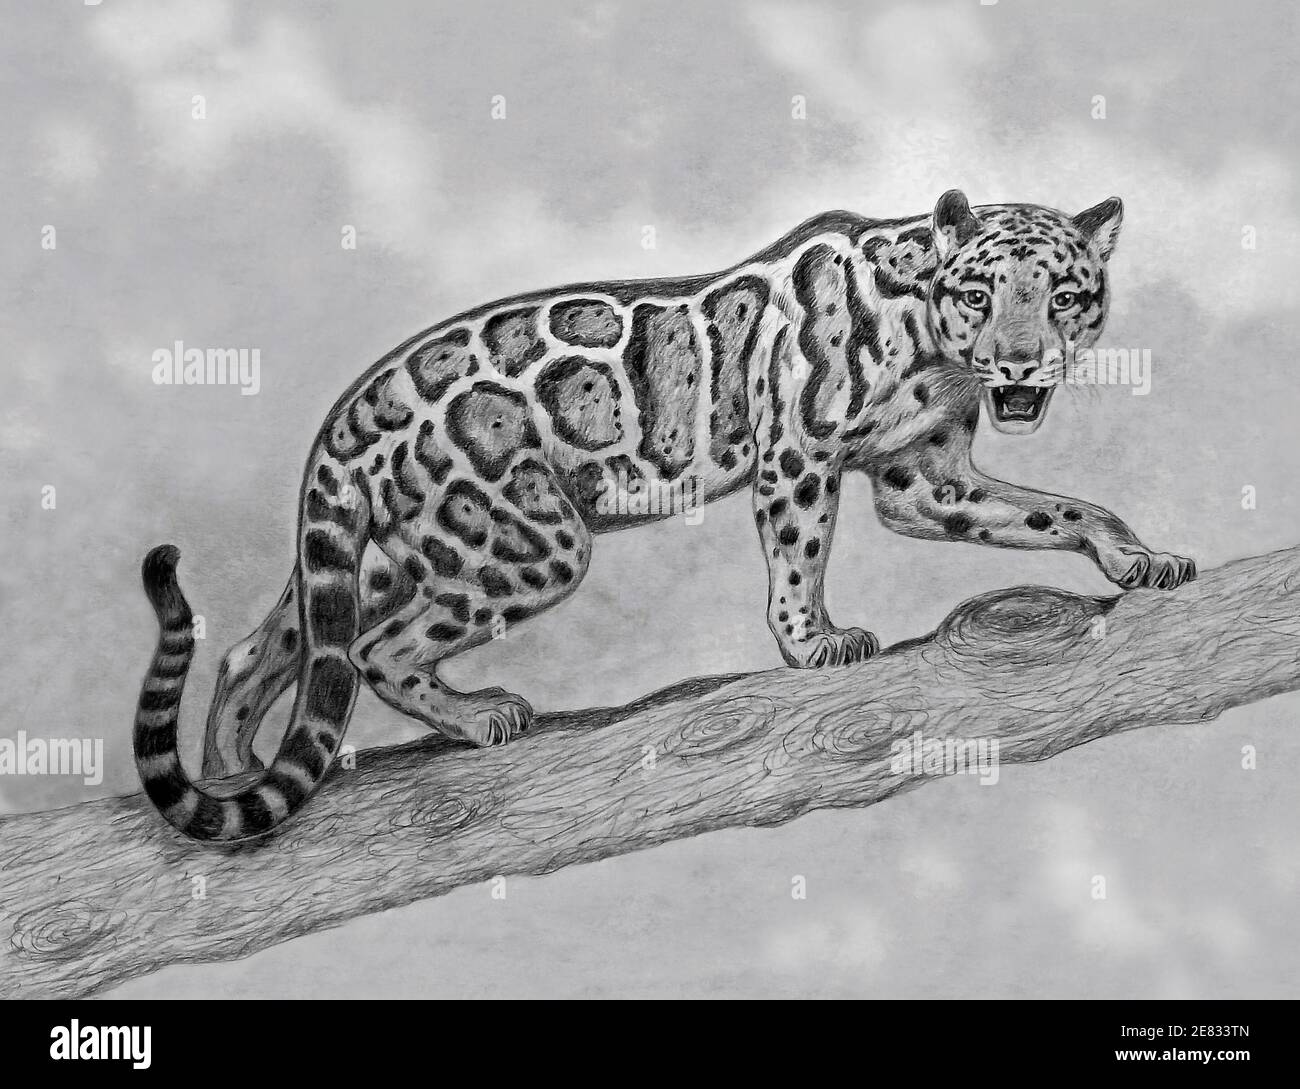 dessin au crayon de léopard obscurci qui marche sur une branche Banque D'Images